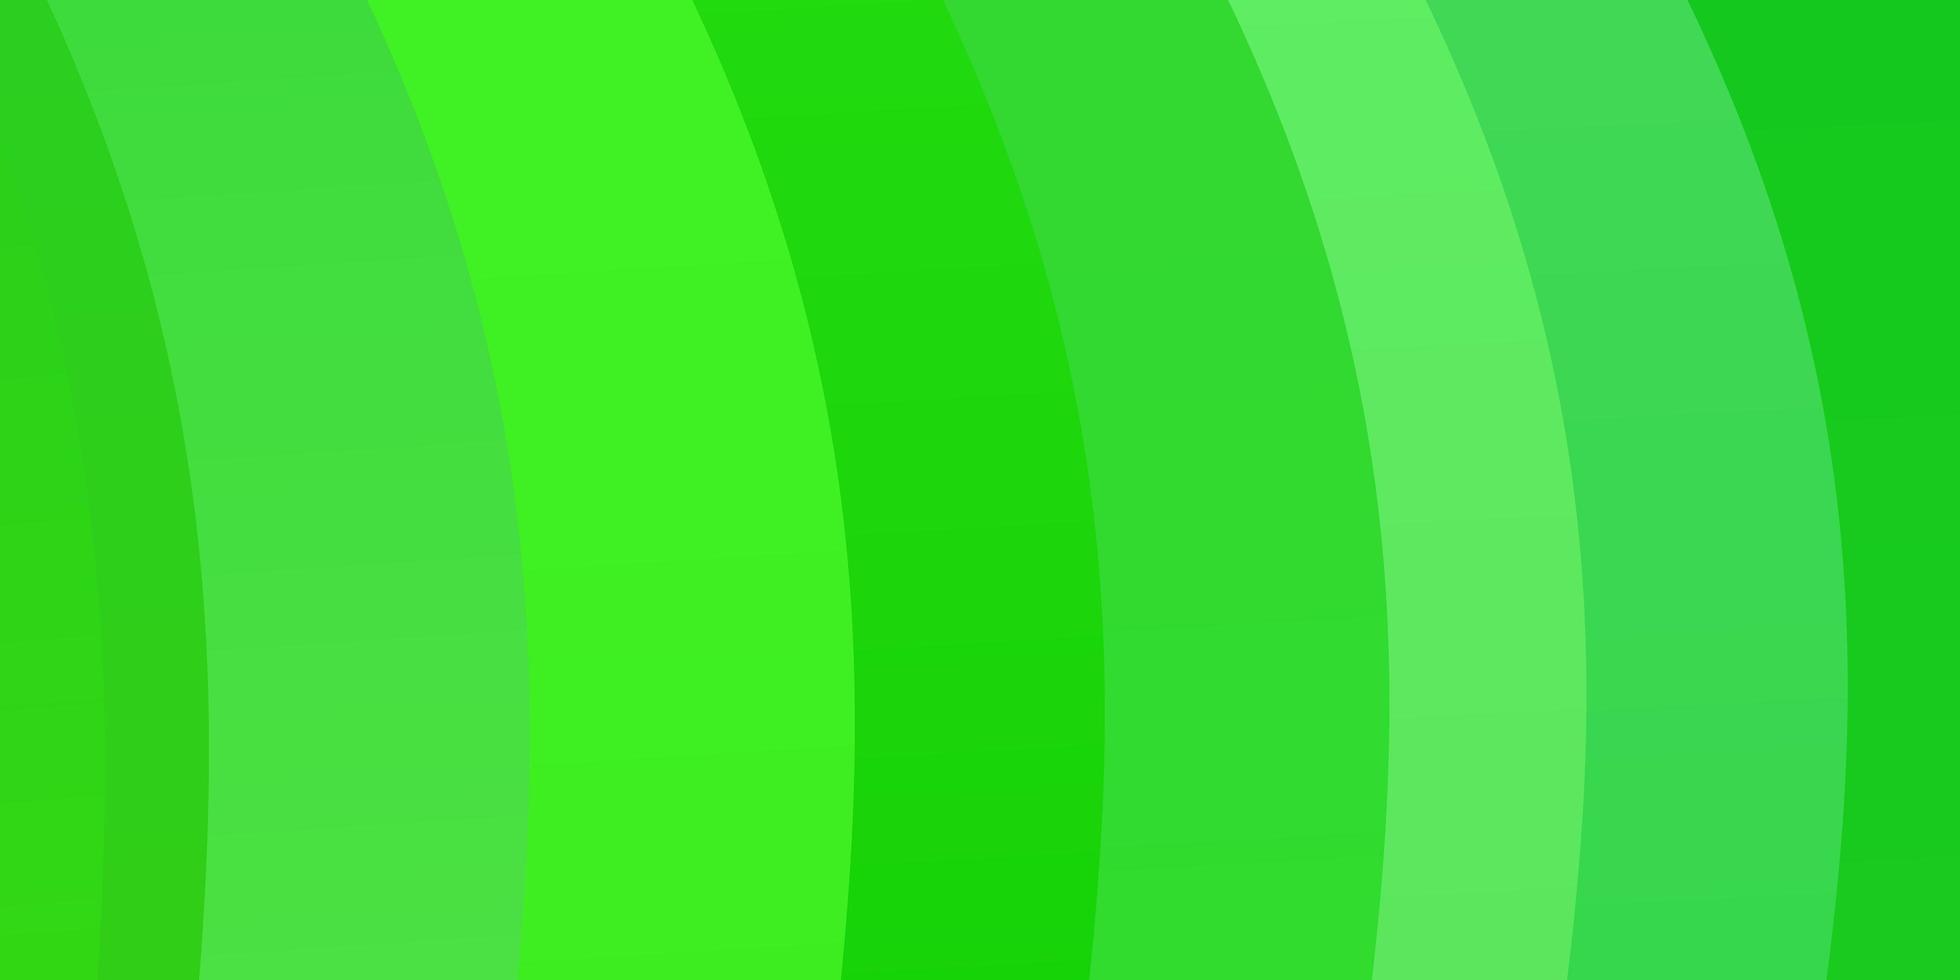 sfondo vettoriale verde chiaro con curve.